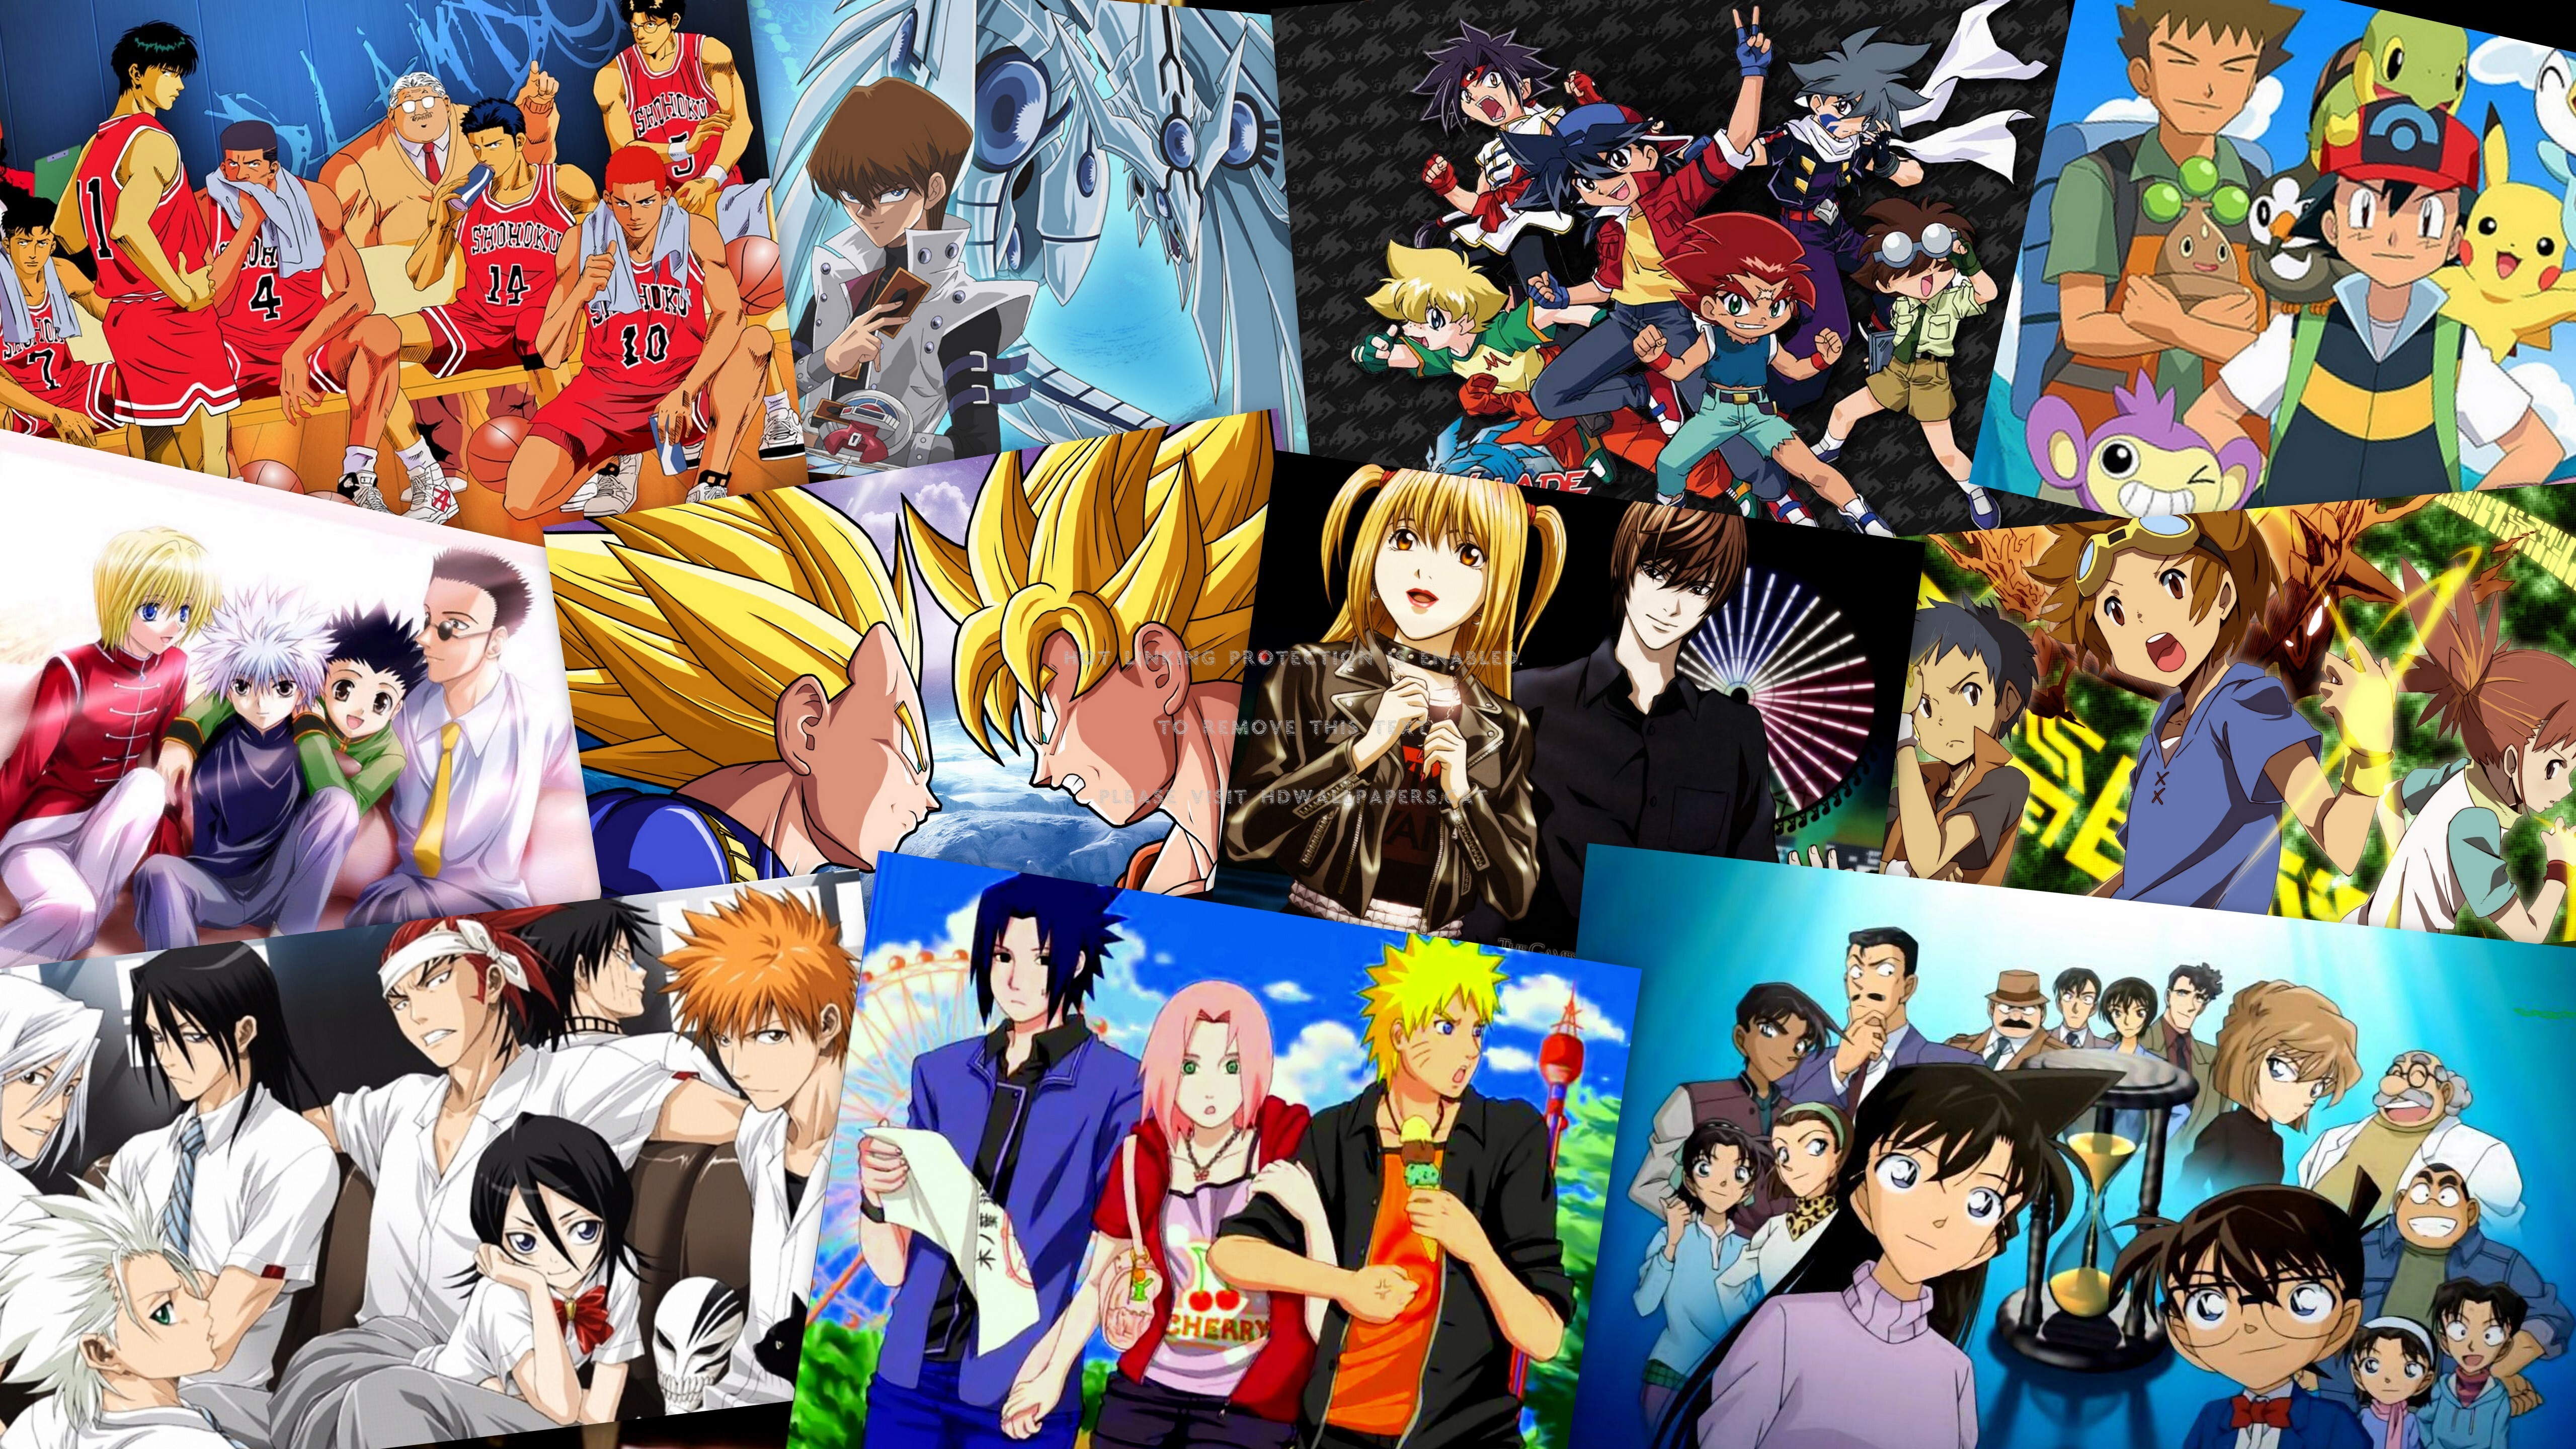 anime collage wallpaper,collage,menschen,kunst,anime,gemeinschaft